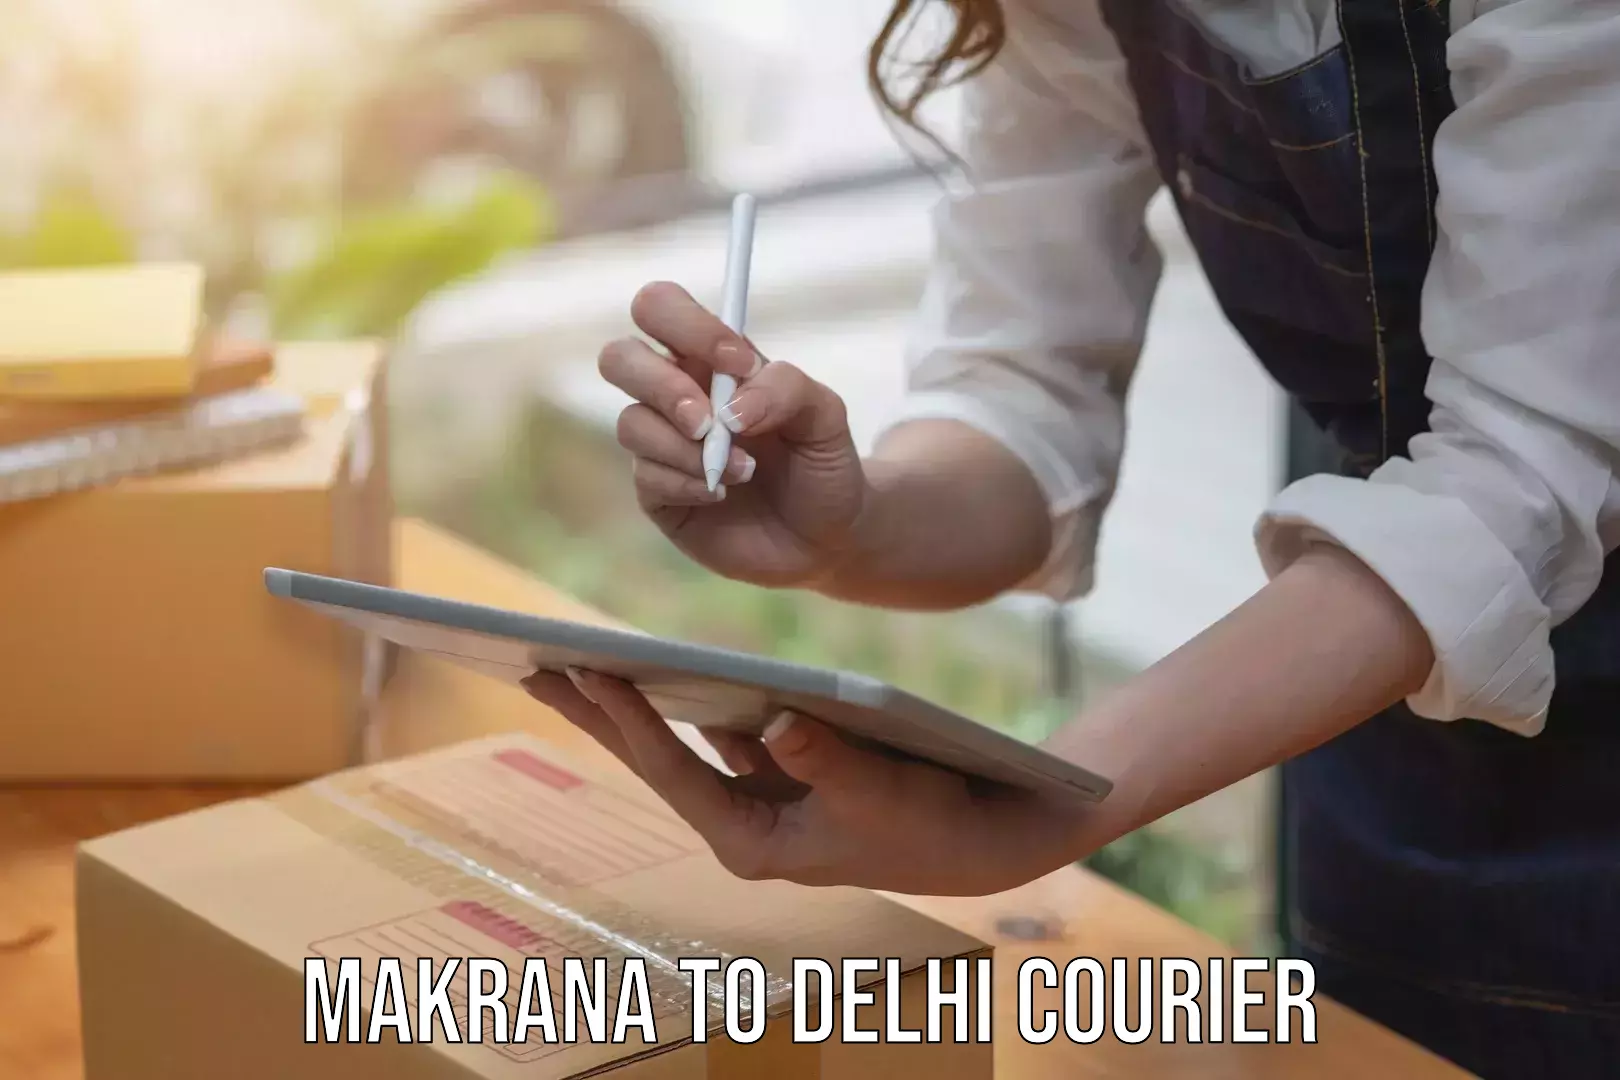 Courier service partnerships Makrana to Delhi